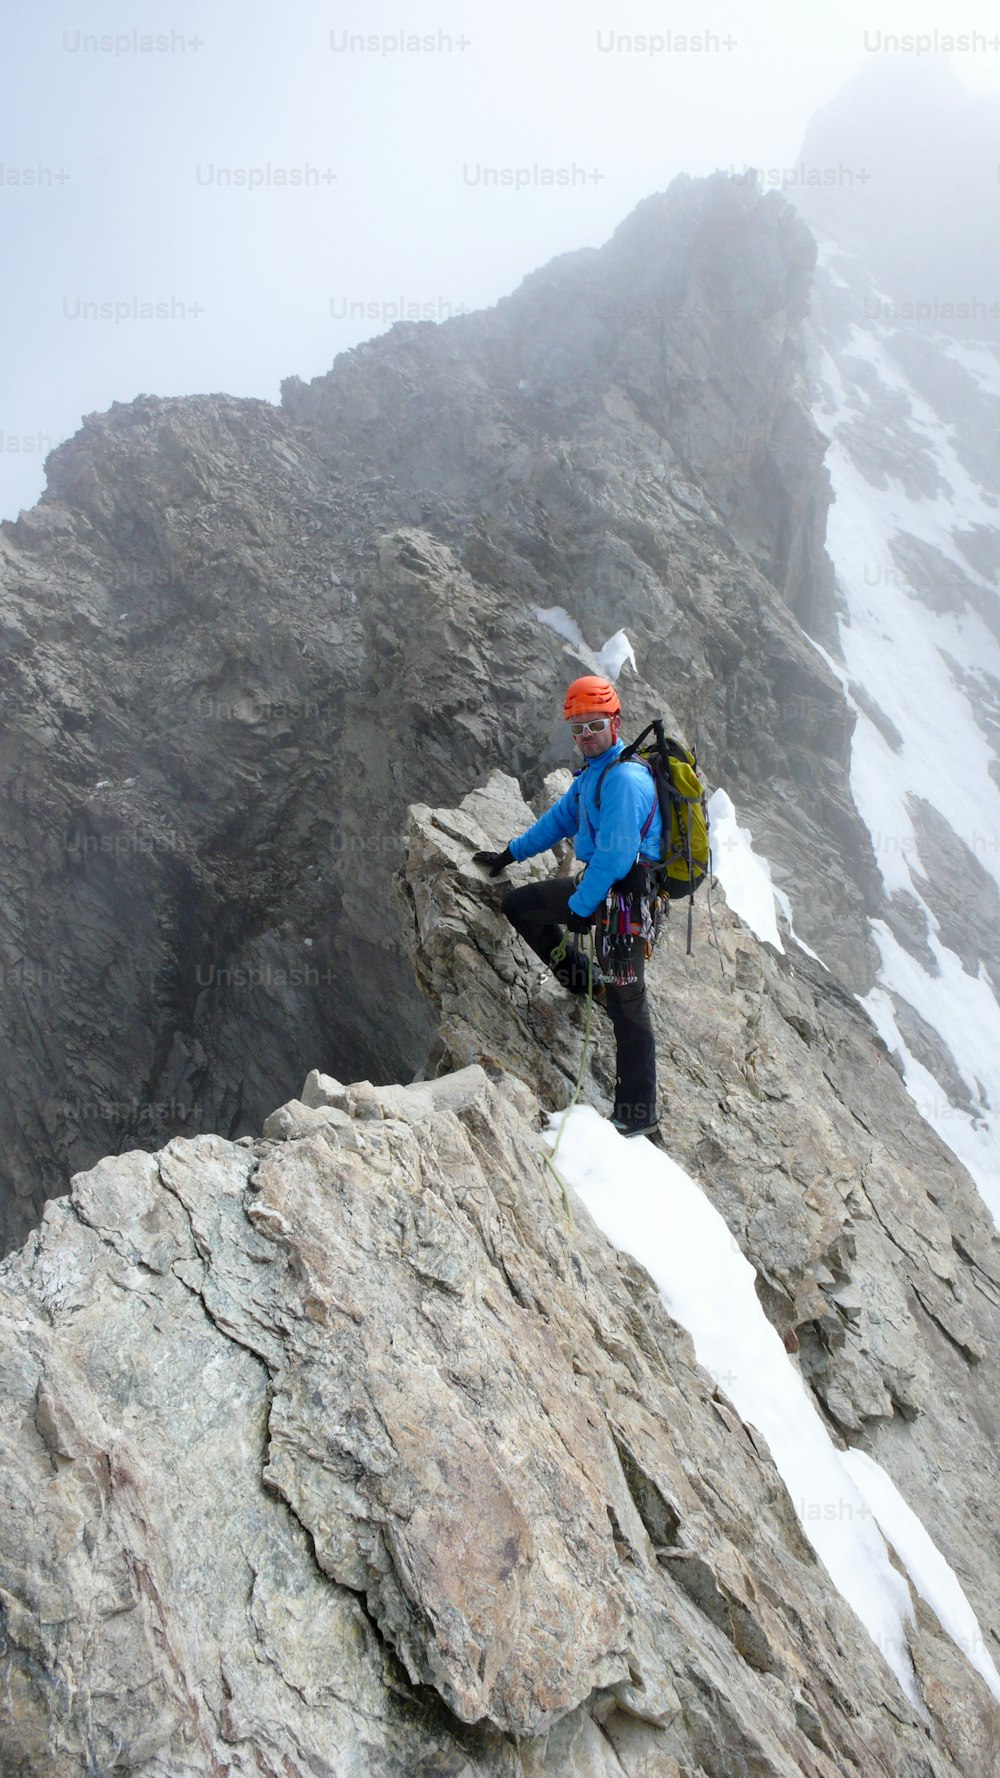 Una guida alpina guida l'arrampicata su un'esposta cresta di granito nelle Alpi